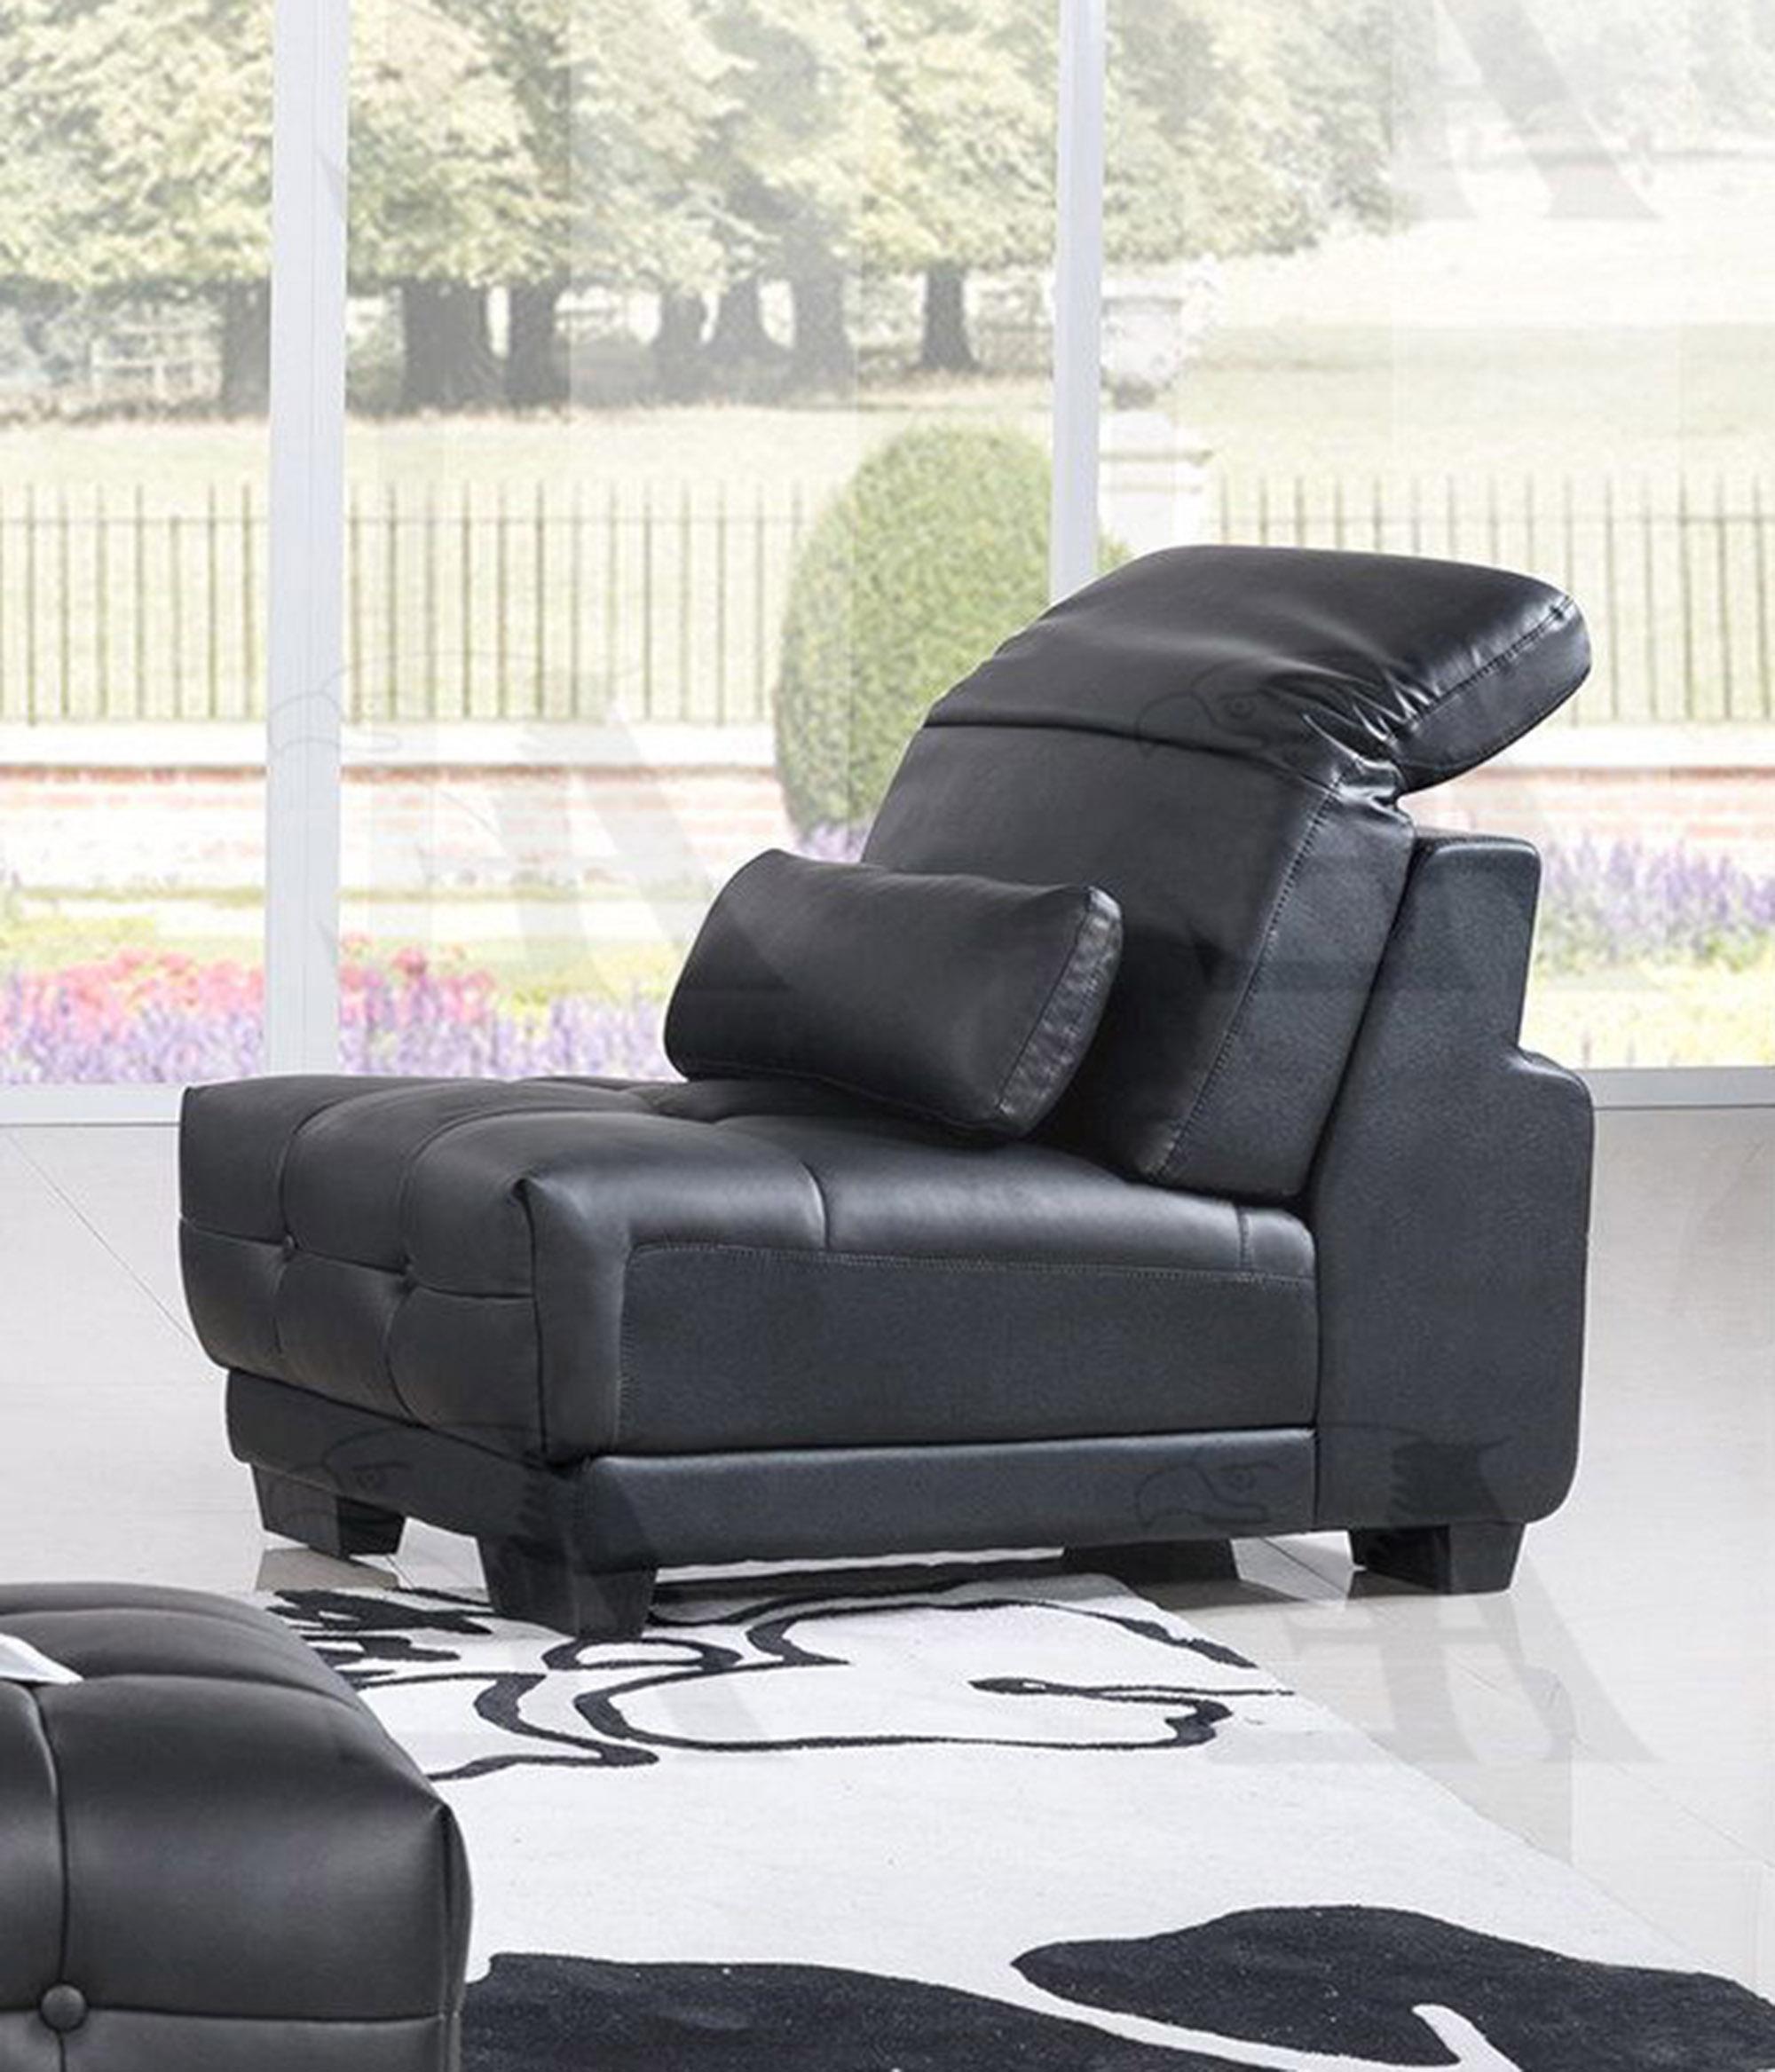 

    
American Eagle Furniture AE-L296-BK Sofa Chaise Chair and Ottoman Set Black AE-L296-BK Set-4 RHC
